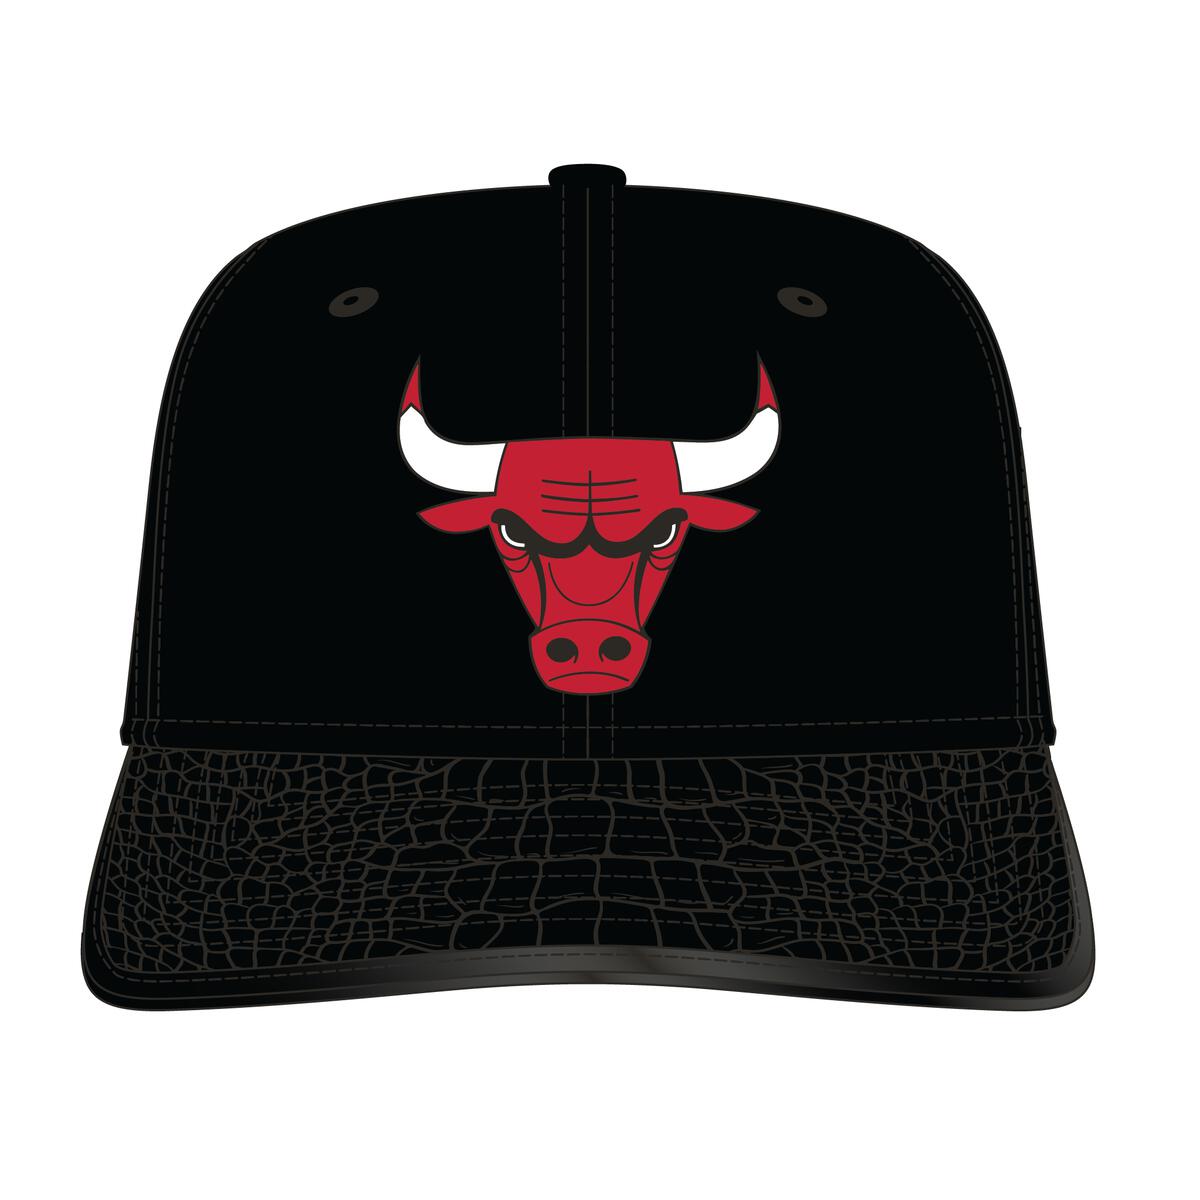 Shop Chicago Bulls MVP Cap, Chicago Bulls Fan Gear